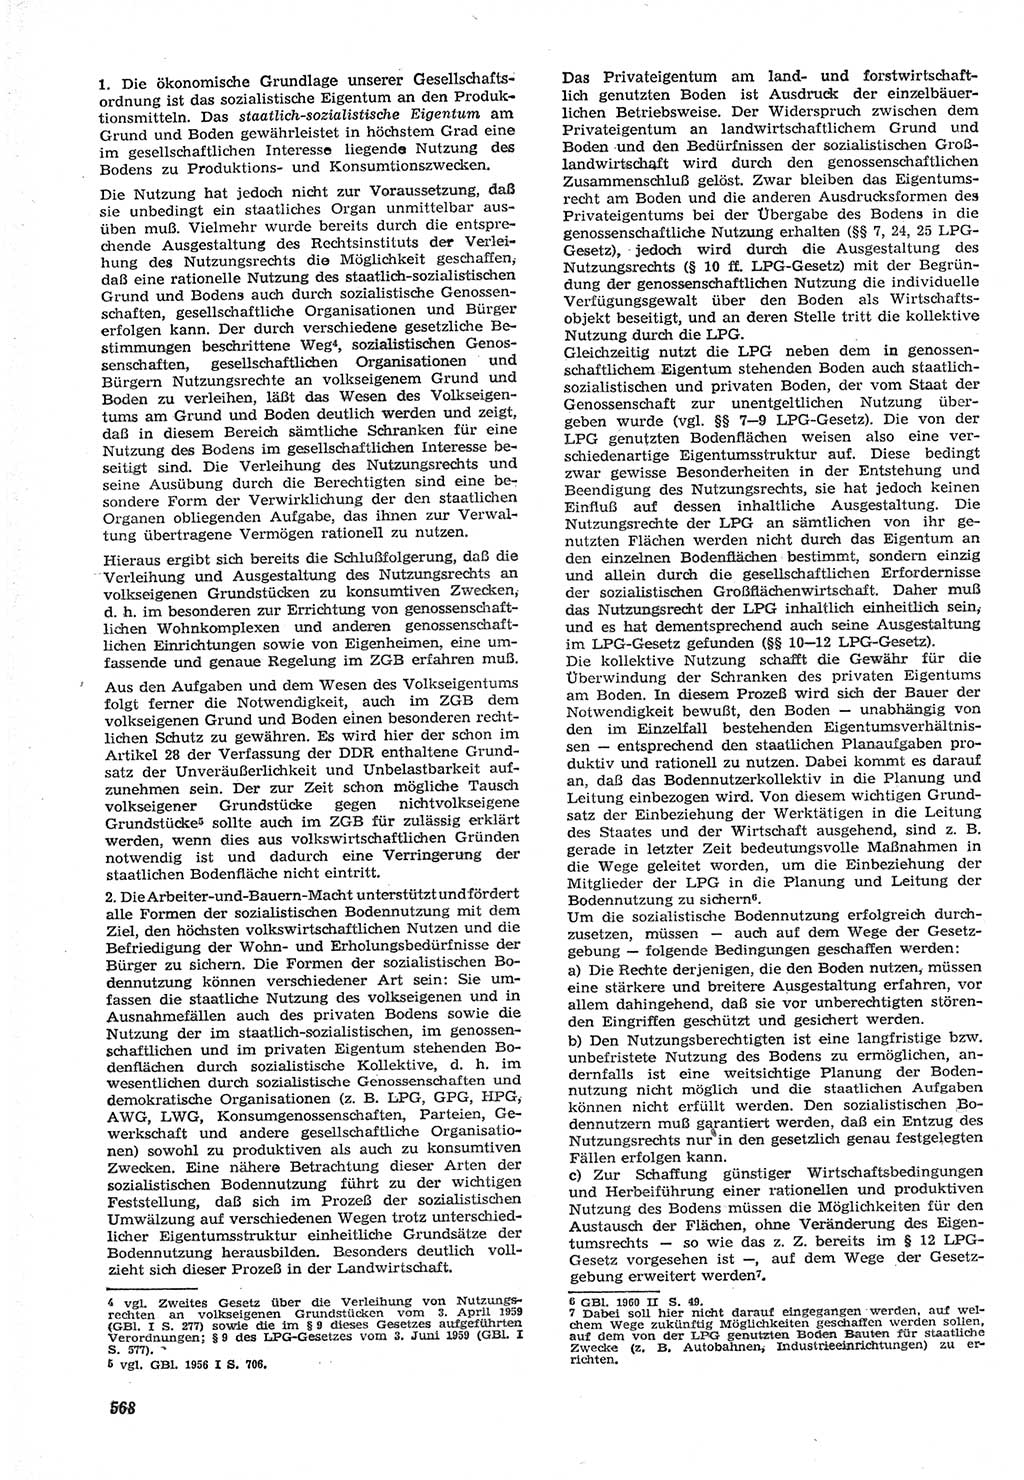 Neue Justiz (NJ), Zeitschrift für Recht und Rechtswissenschaft [Deutsche Demokratische Republik (DDR)], 15. Jahrgang 1961, Seite 568 (NJ DDR 1961, S. 568)